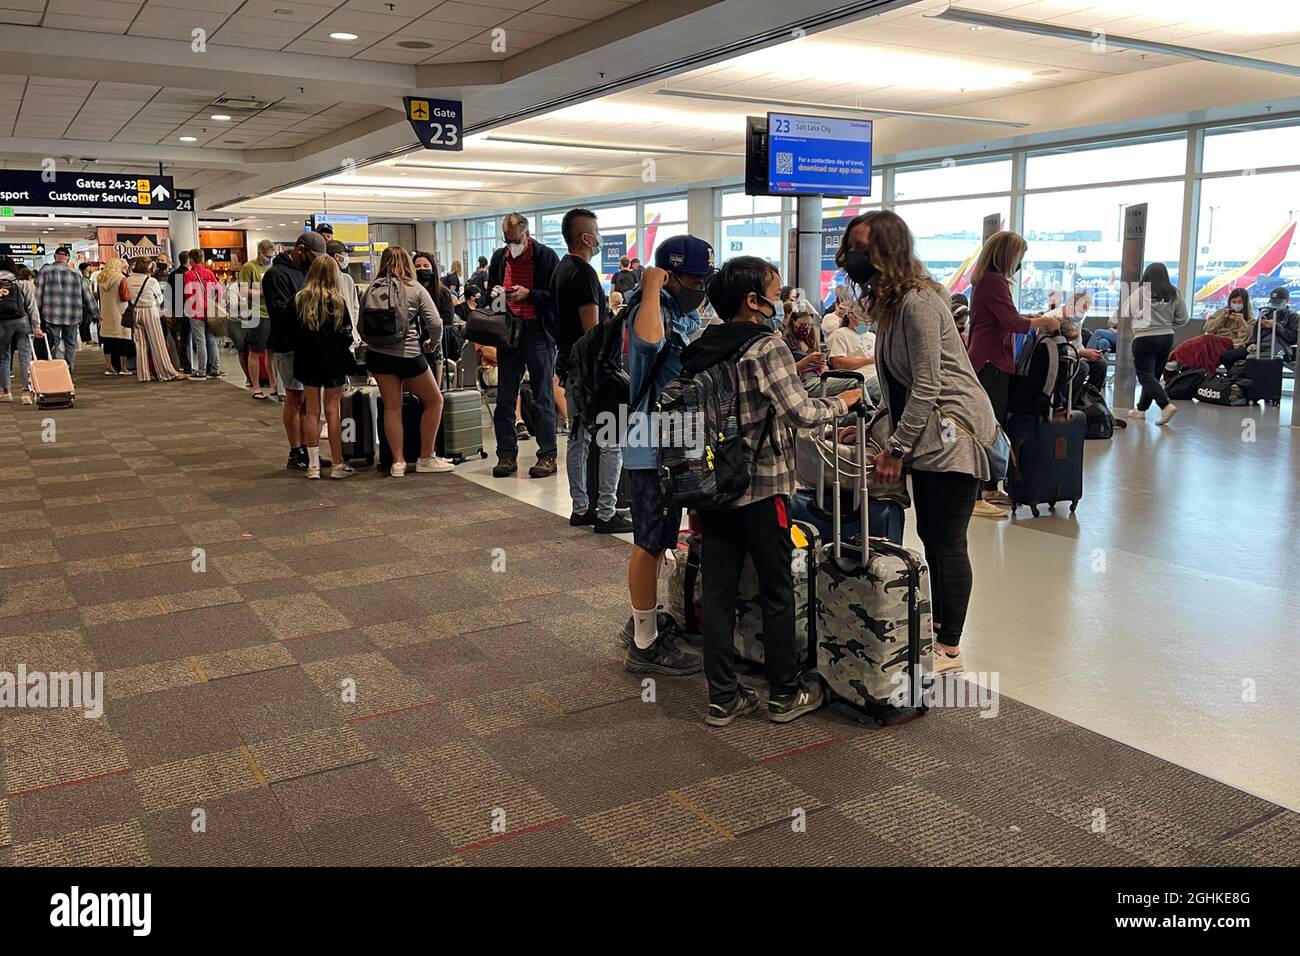 Passagiere warten am Samstag, den 4. September 2021, in Oakland auf den Flug von Southwest Airlines am Gate 23 von Terminal 2 des internationalen Flughafens Oakland, Cali Stockfoto